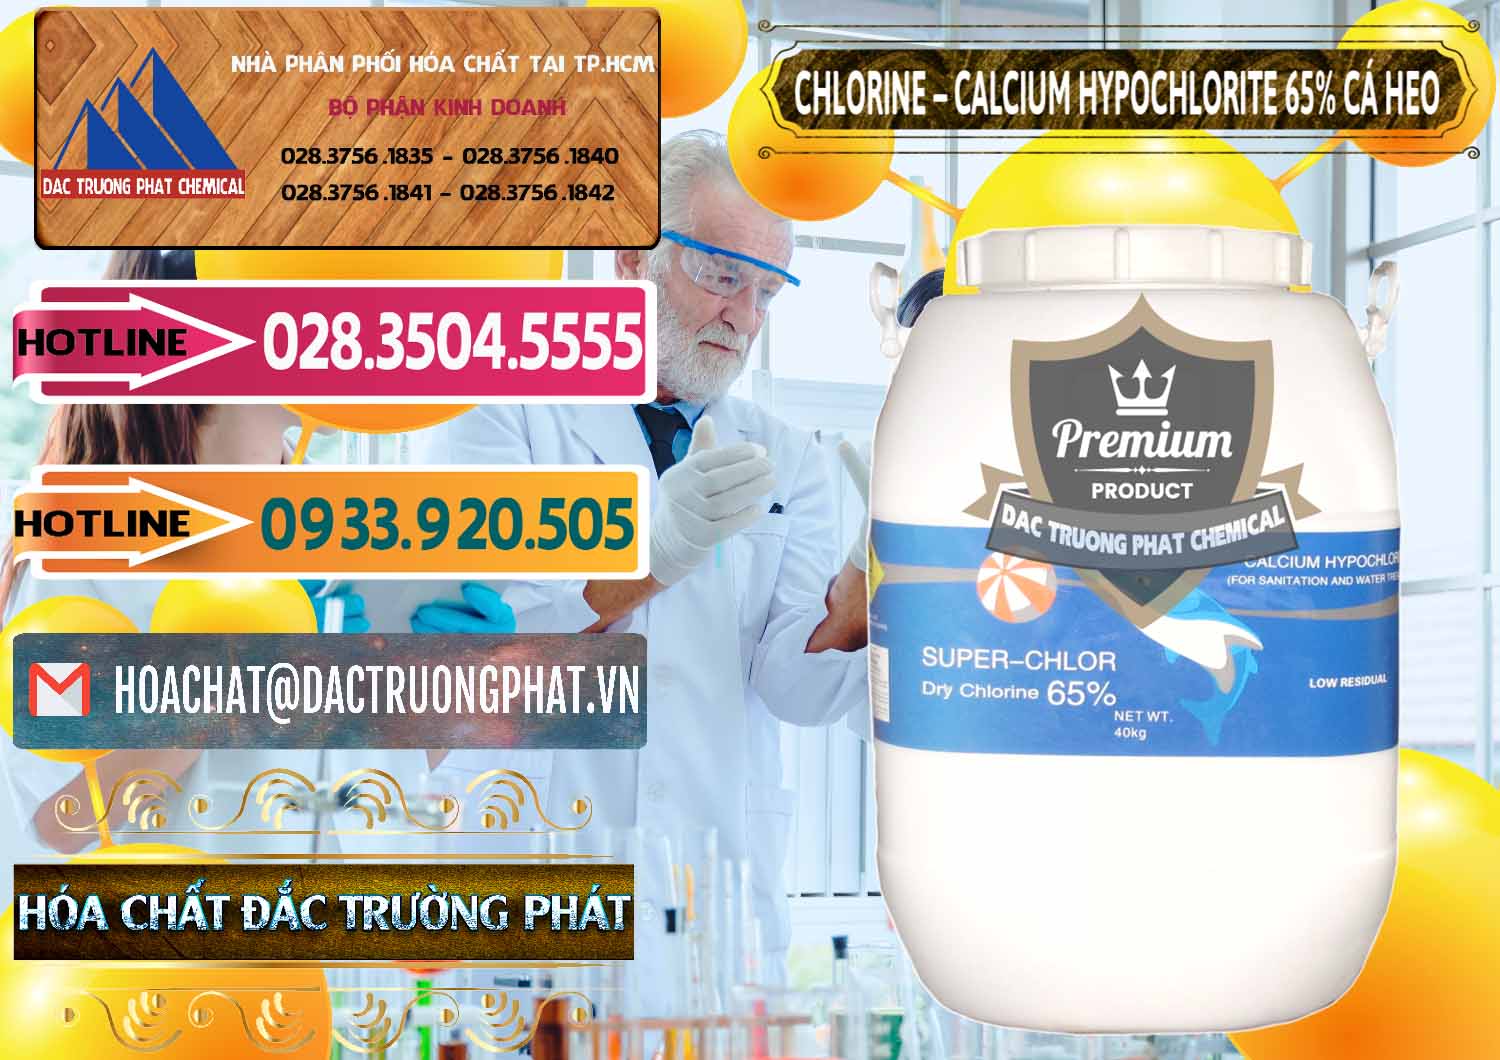 Cty nhập khẩu & bán Clorin - Chlorine Cá Heo 65% Trung Quốc China - 0053 - Công ty phân phối & cung ứng hóa chất tại TP.HCM - dactruongphat.vn